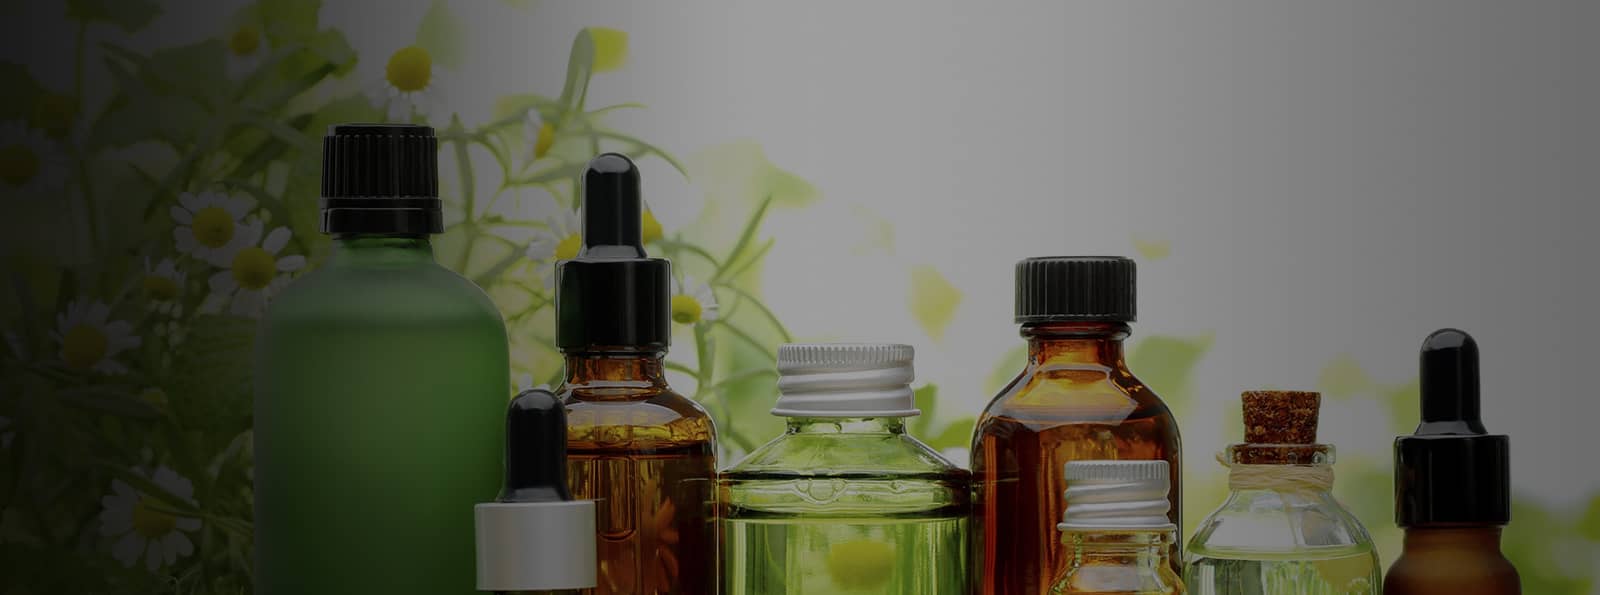 Essential Oils vs Modern Medicine, Which Works Best?